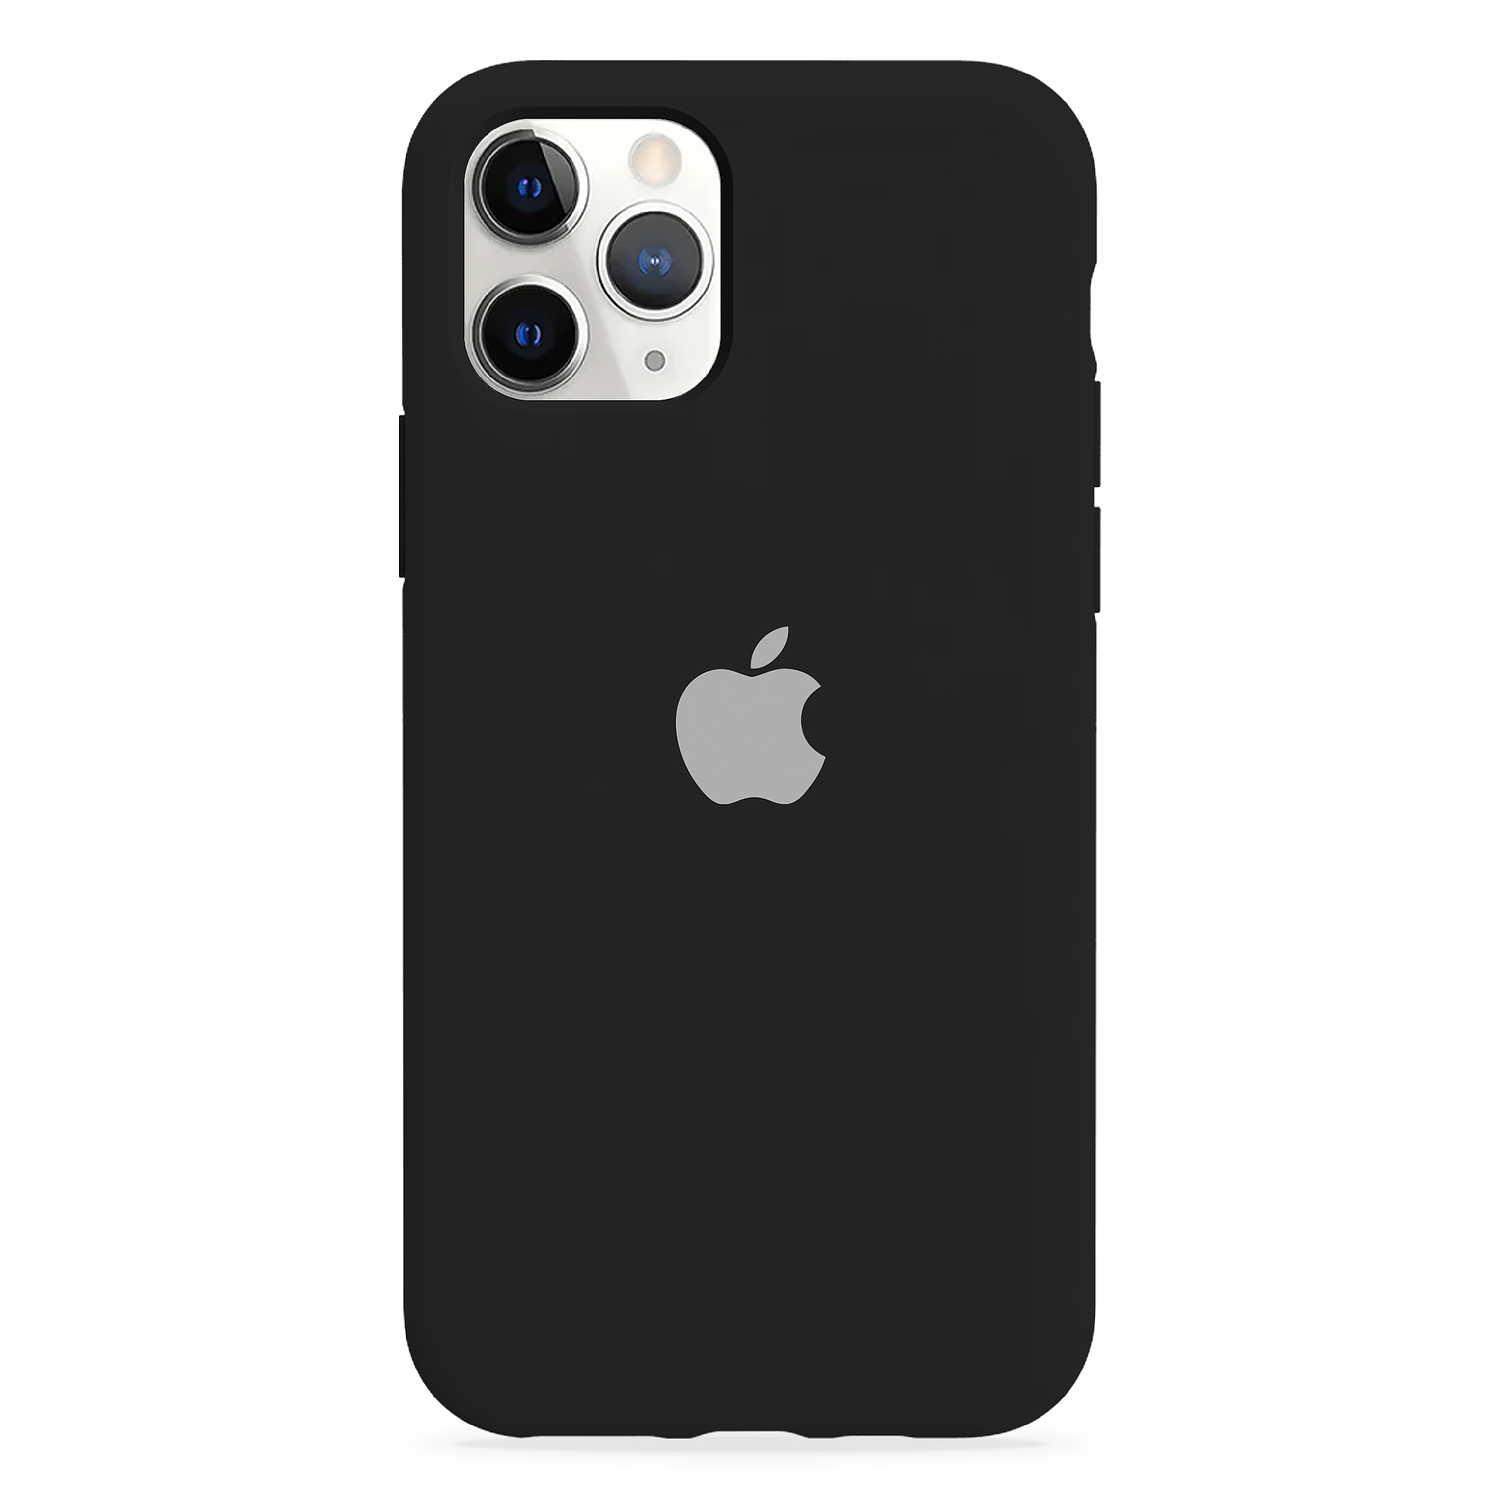 Carcasa de Silicona - iPhone 11 Pro Max 12